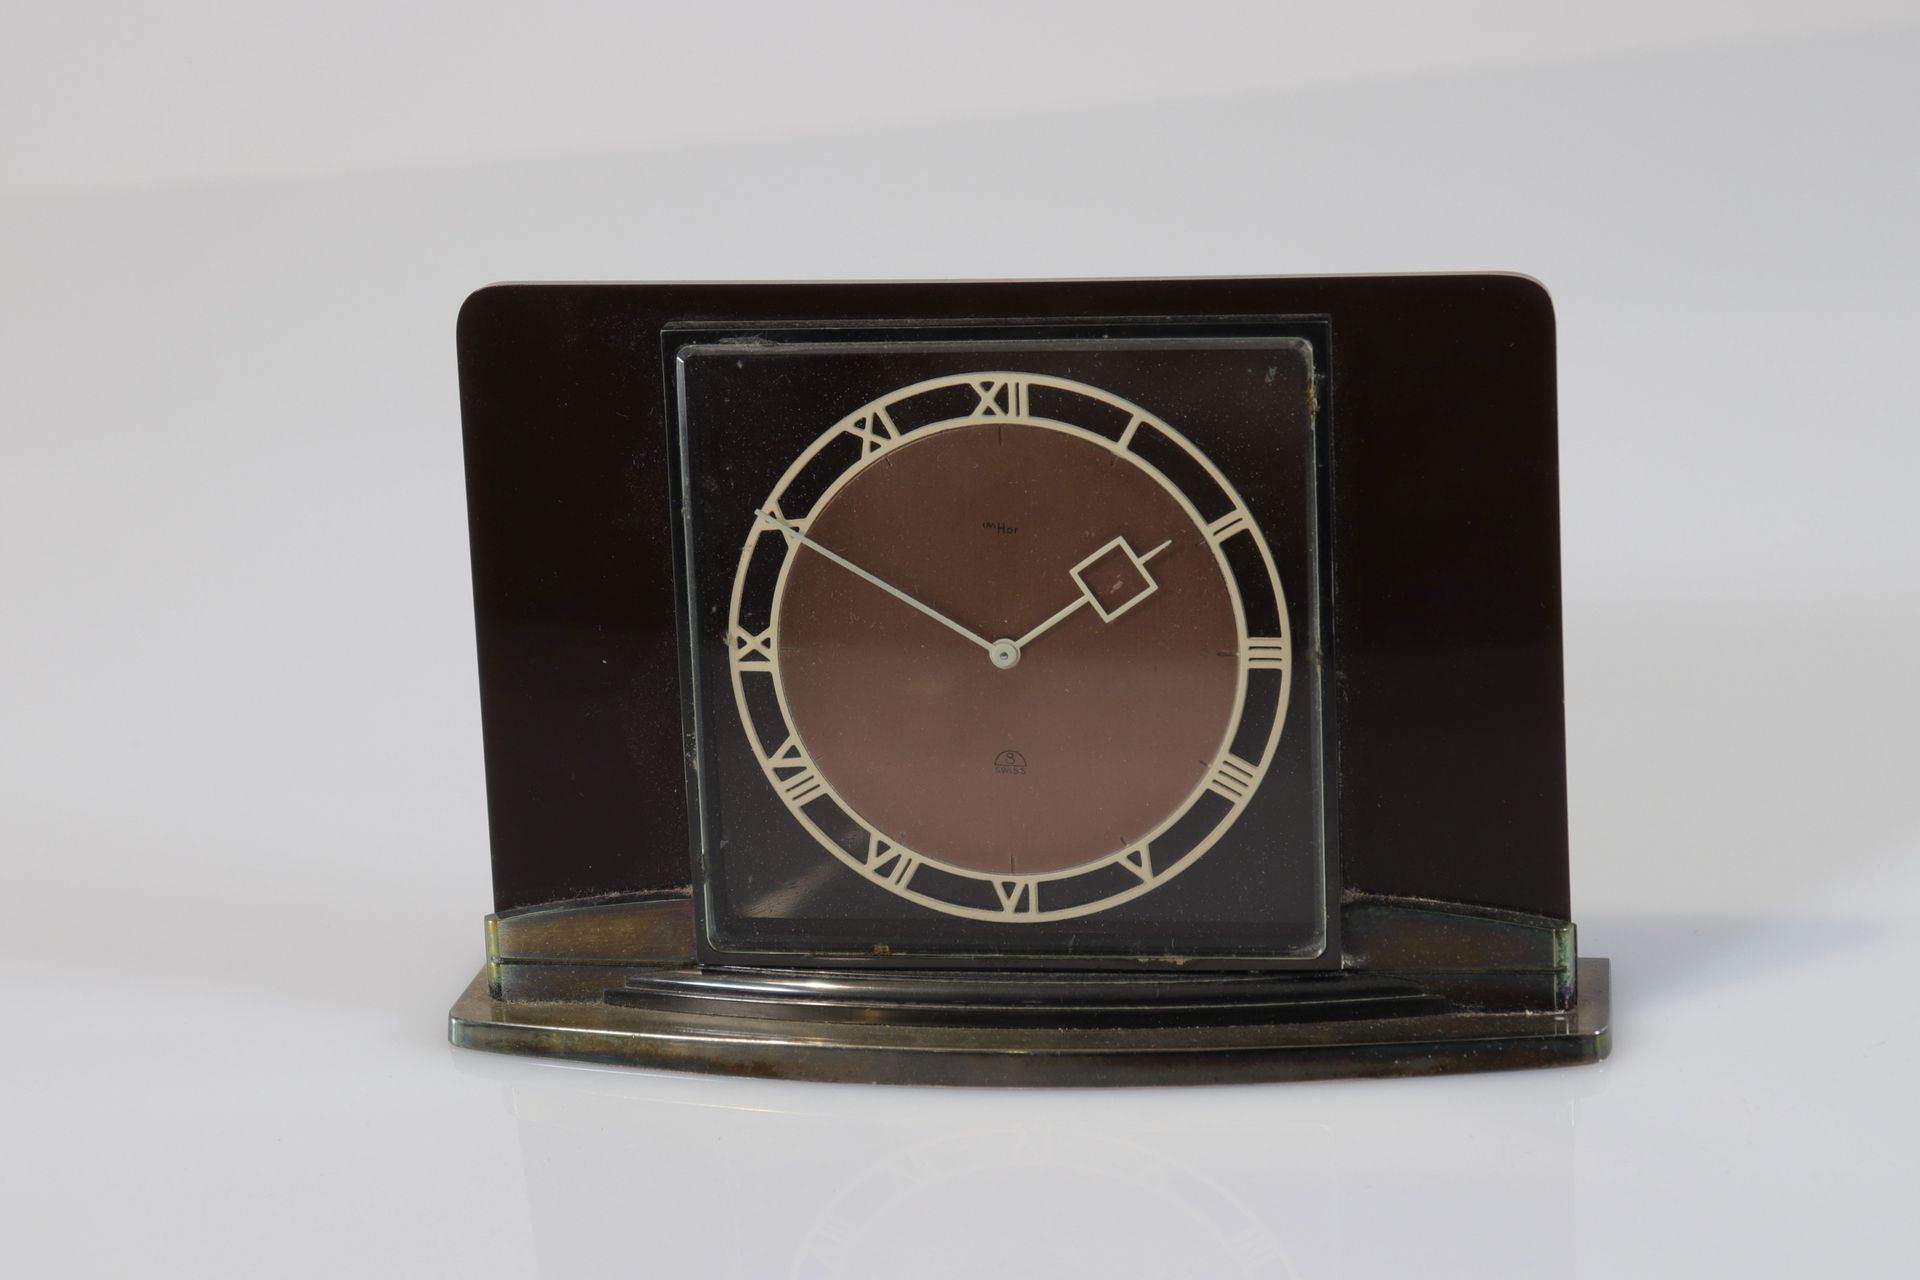 Suisse - Horloge Imhoff - 1930 Suisse - Horloge Imhoff - 1930
Epoque: Xxième 
Di&hellip;